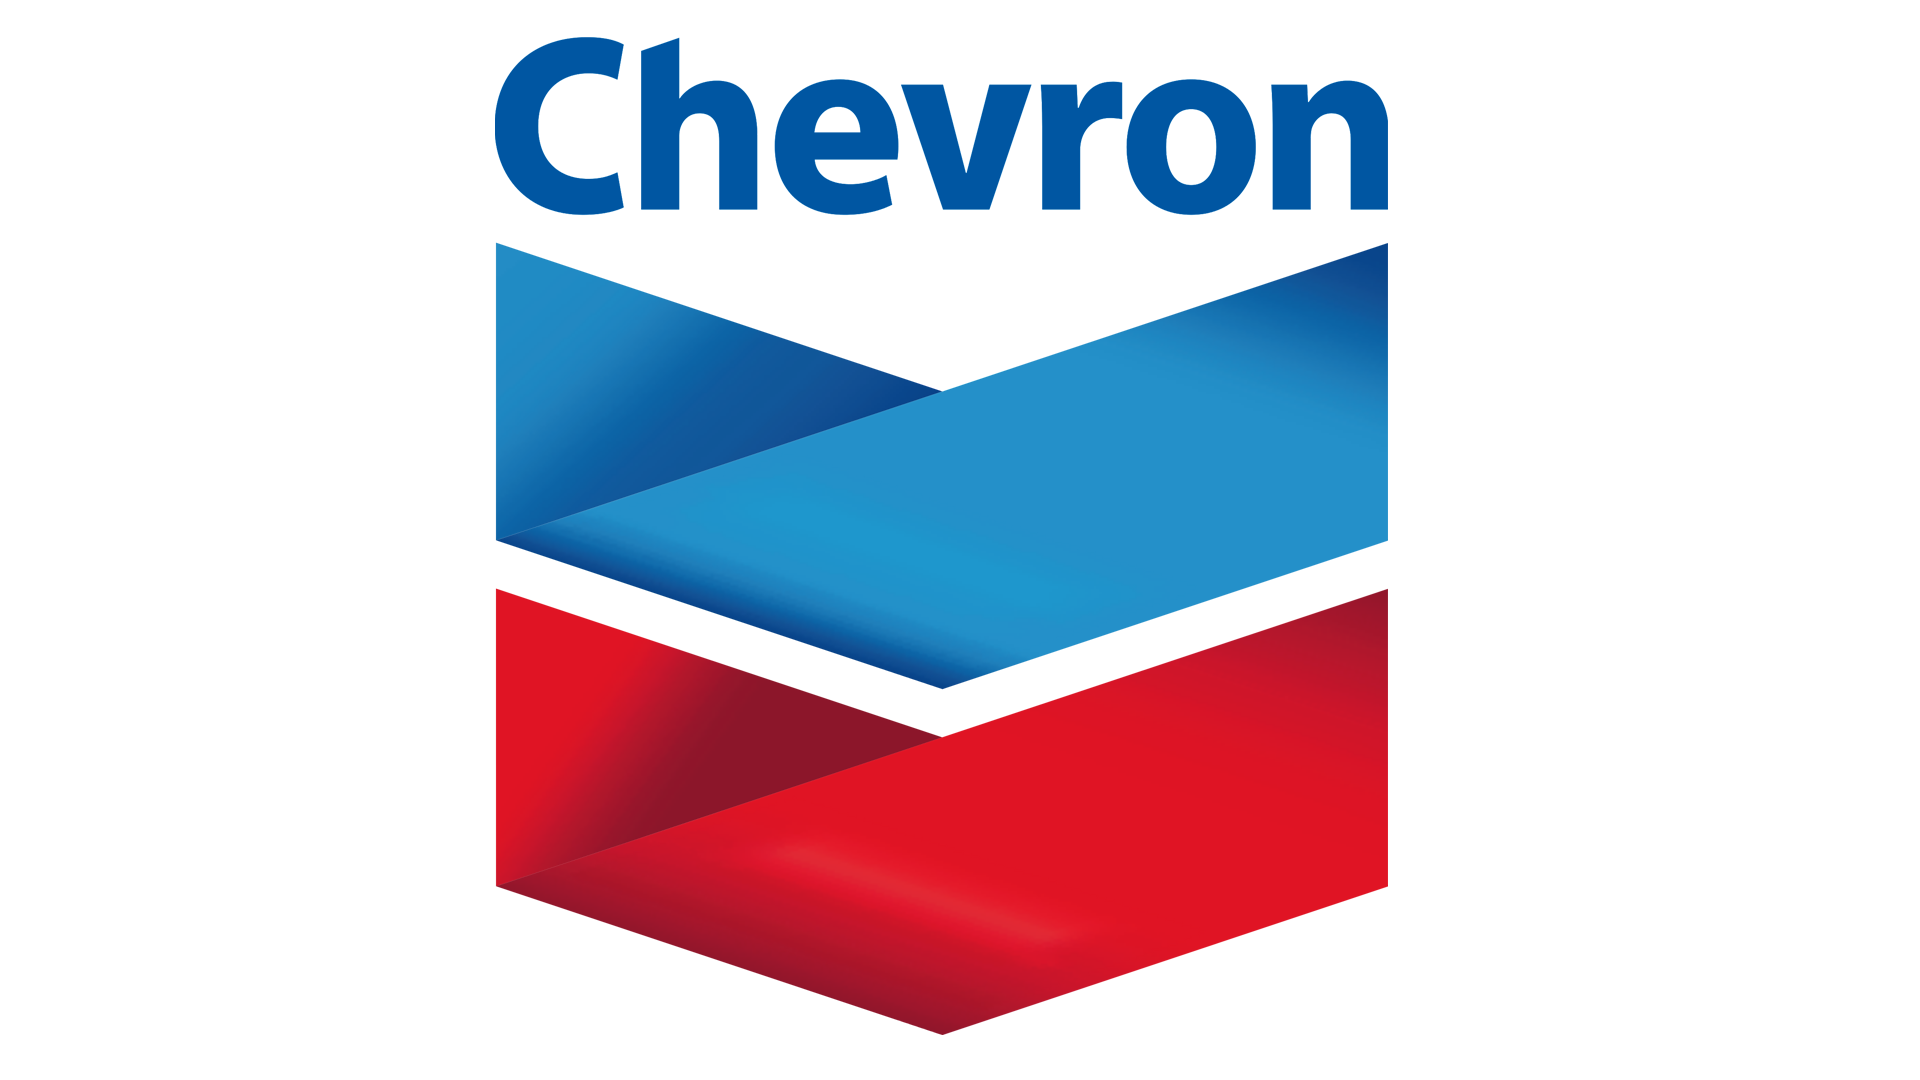 Chevron-Logo.png